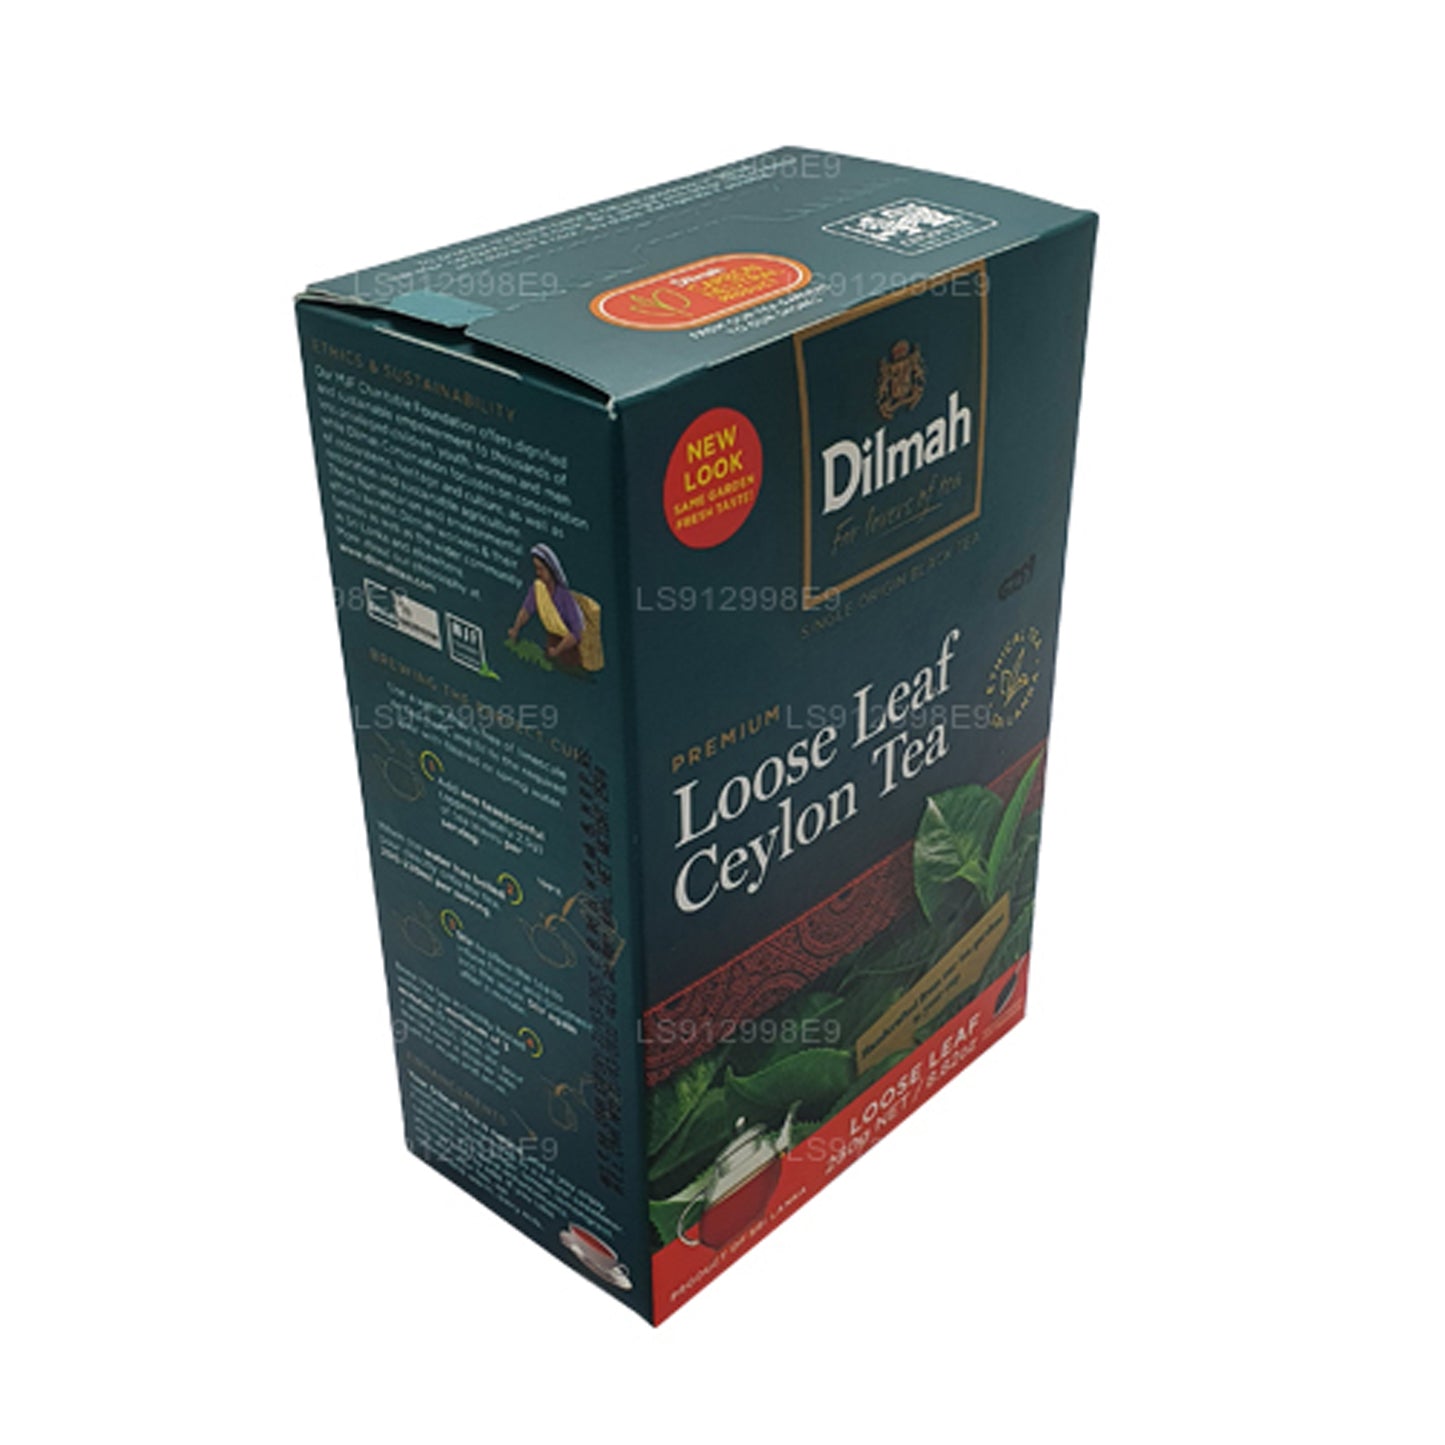 Tè sfuso Dilmah Premium Ceylon (125g)